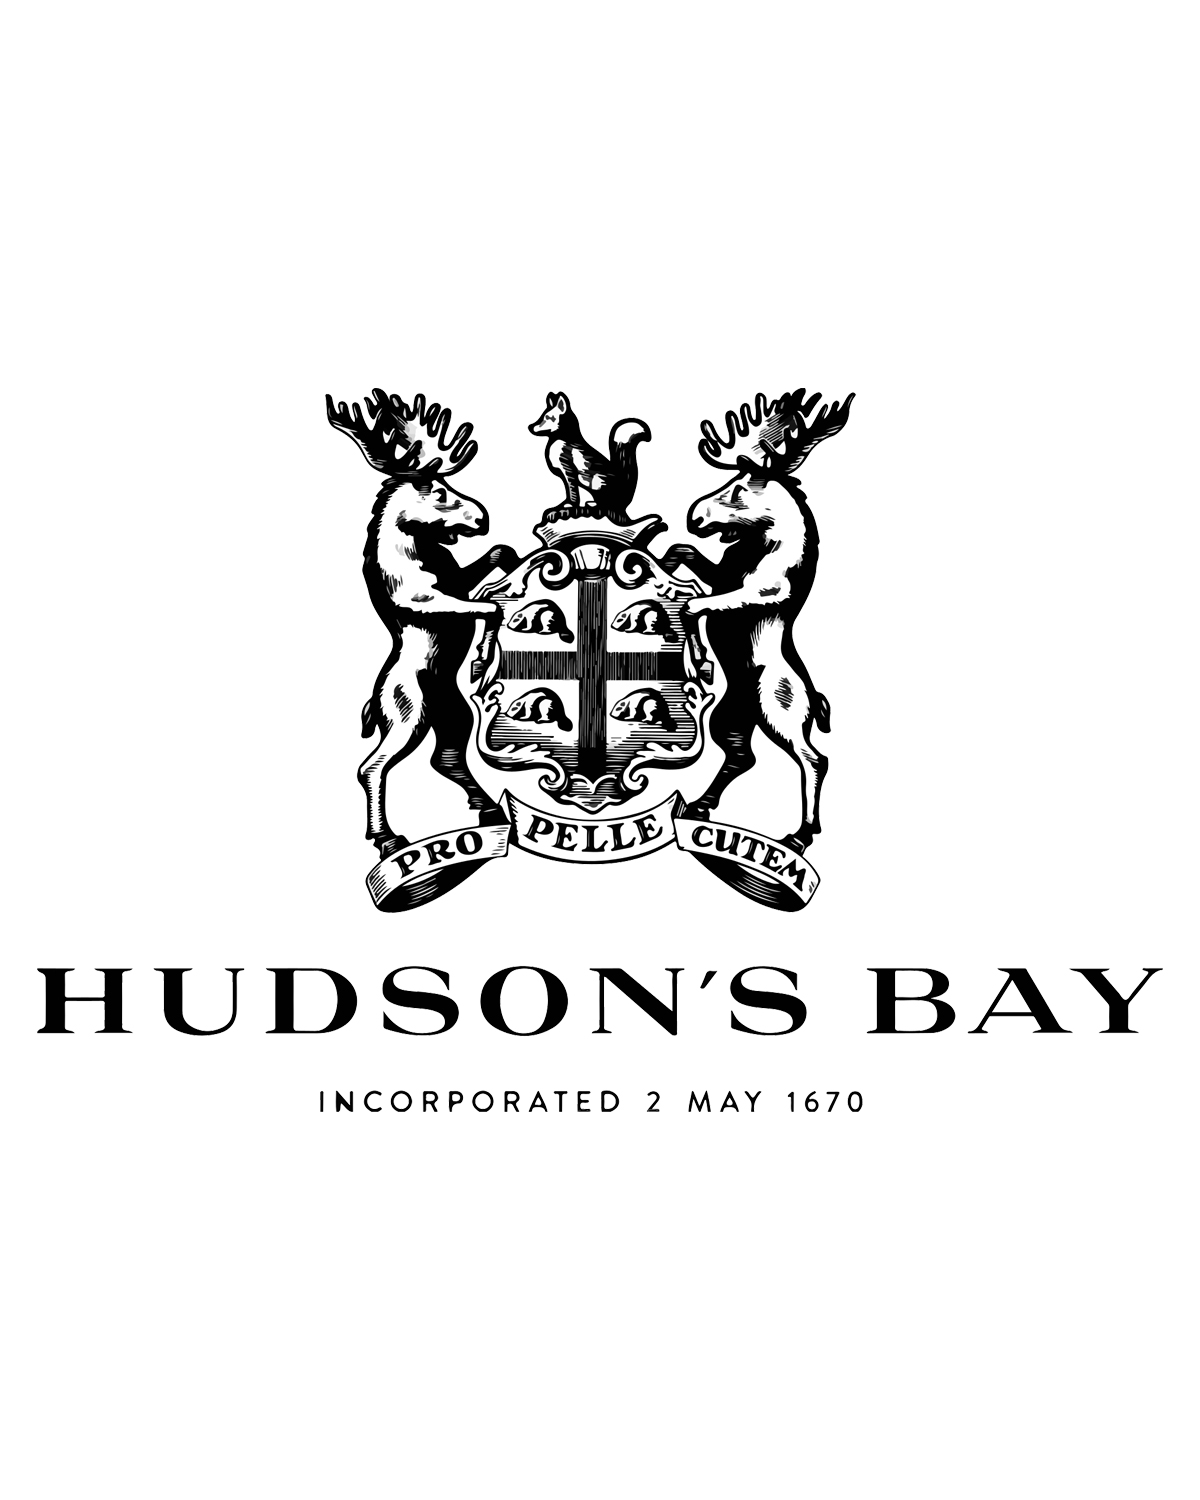 Hudson's Bay brand logo in black and white.